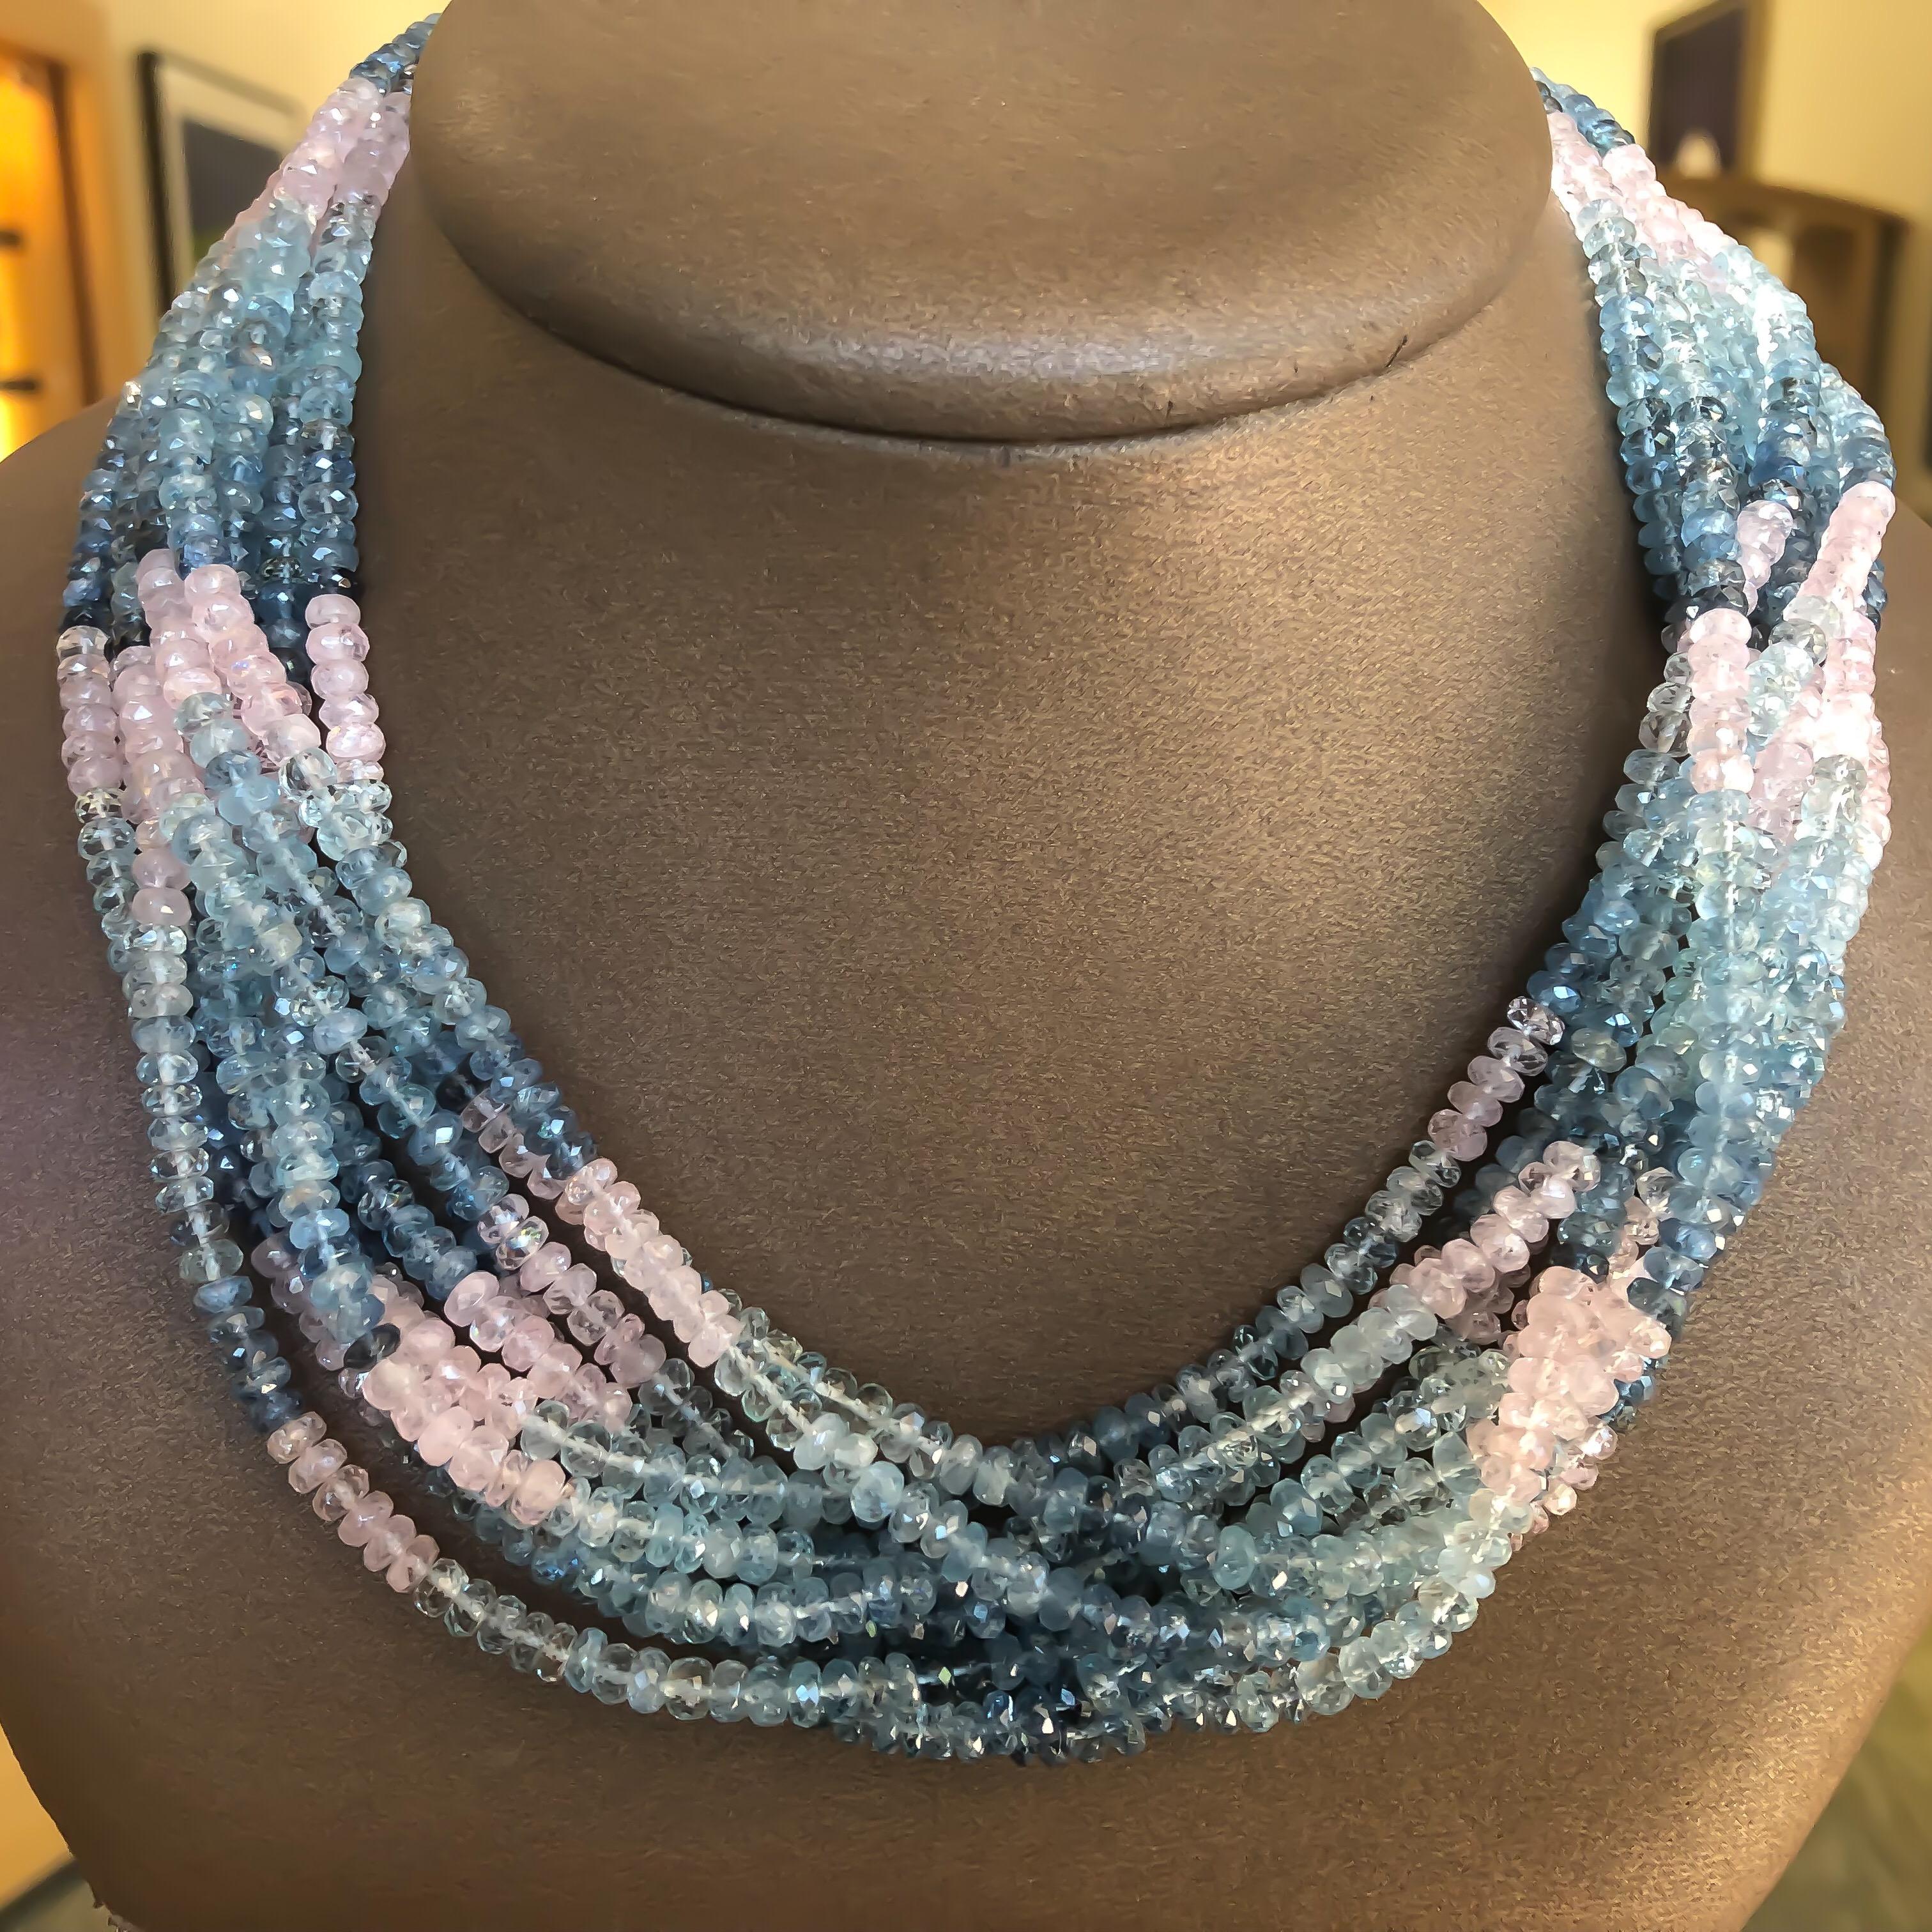 Individuell gestaltete natürliche Aquamarin (blau) und Morganit (rosa) Beryll Mode Halskette mit einem 18 Karat Gelbgold Verschluss konzipiert. Es gibt zehn (10) Stränge mit ombre abgestuften Farbperlen, die an einem Knebelverschluss befestigt sind.